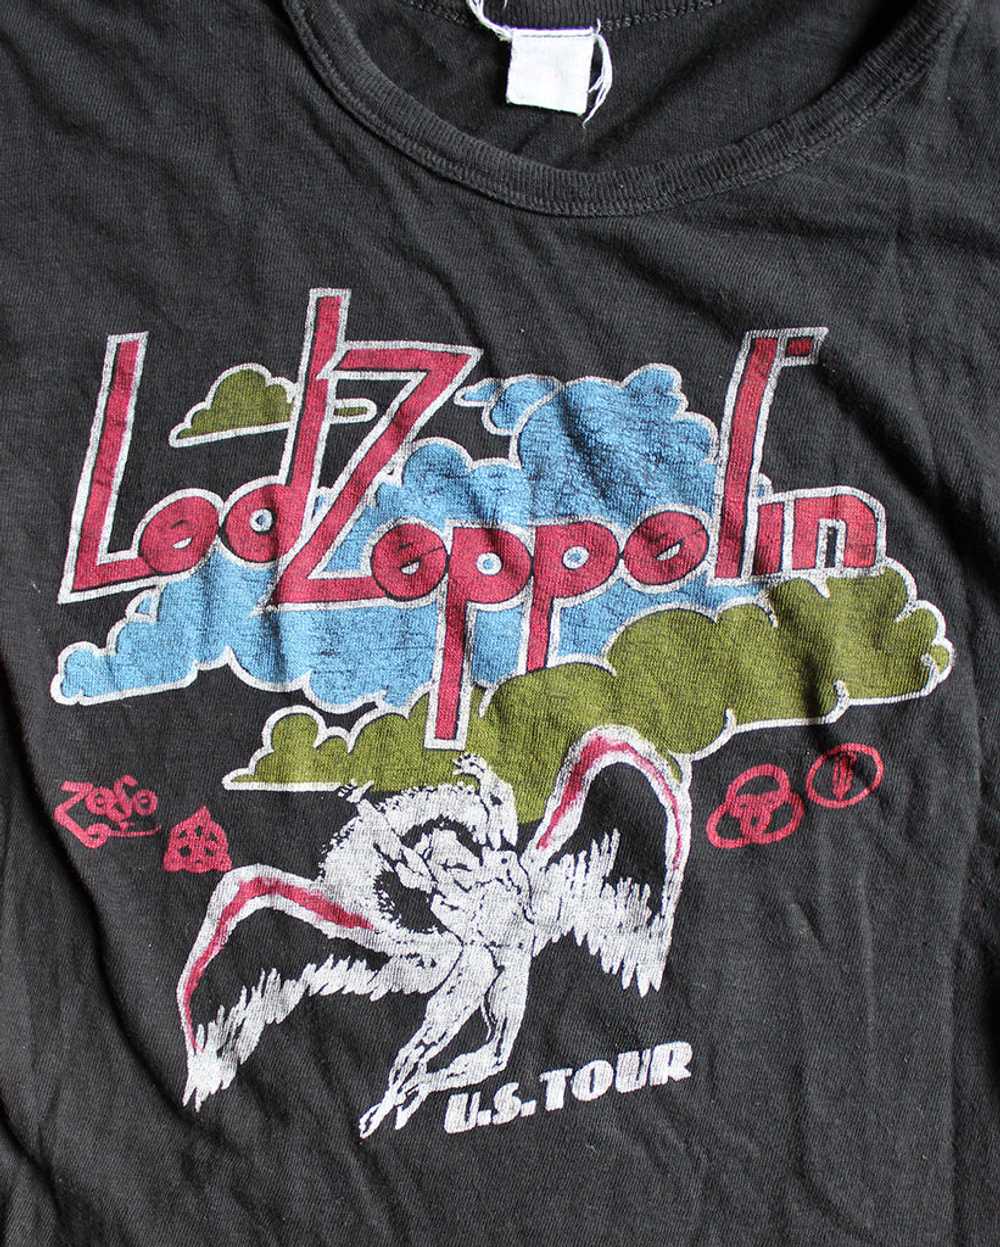 Vintage 70's Led Zeppelin US Tour T-shirt - image 2